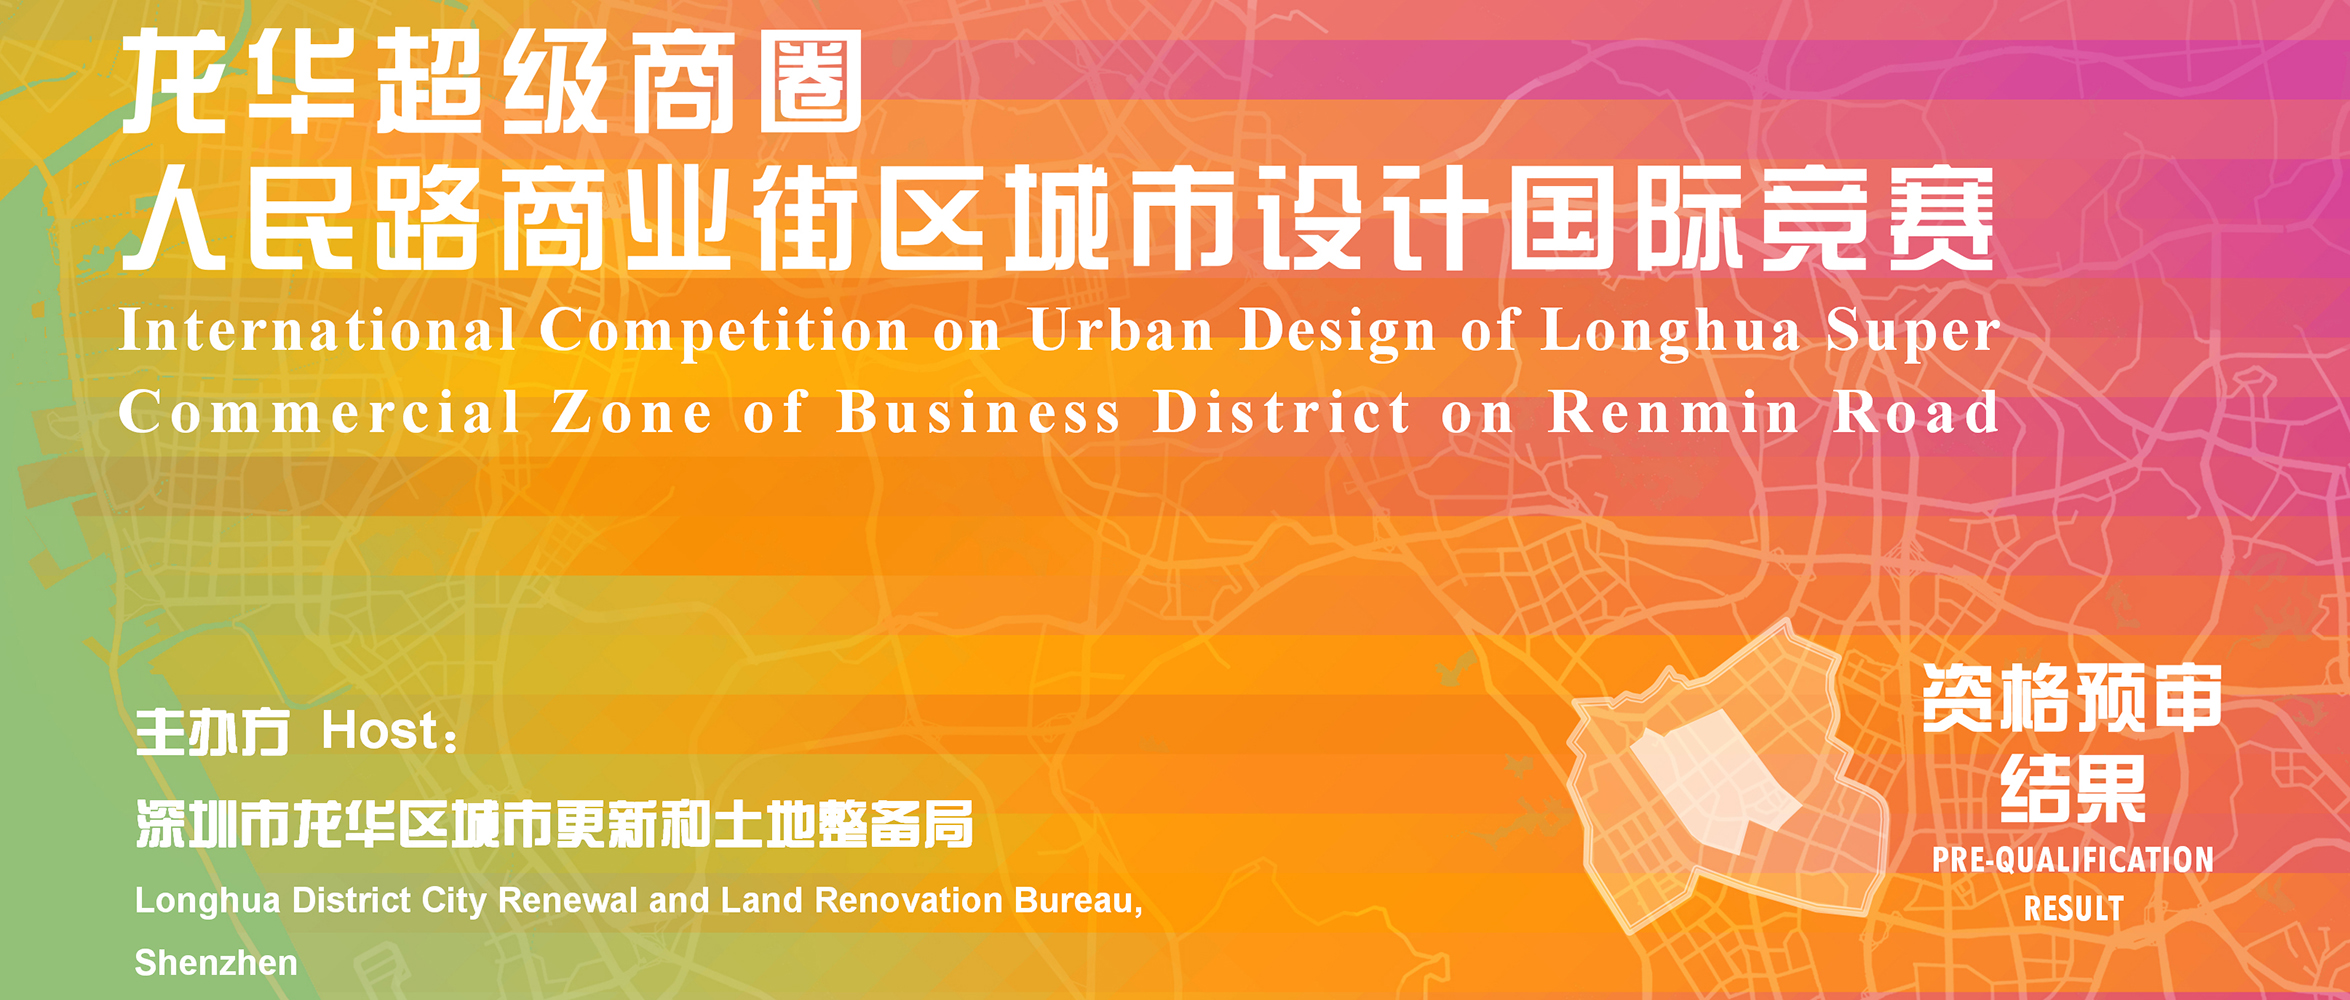 资格预审结果 | 龙华超级商圈人民路商业街区城市设计国际竞赛